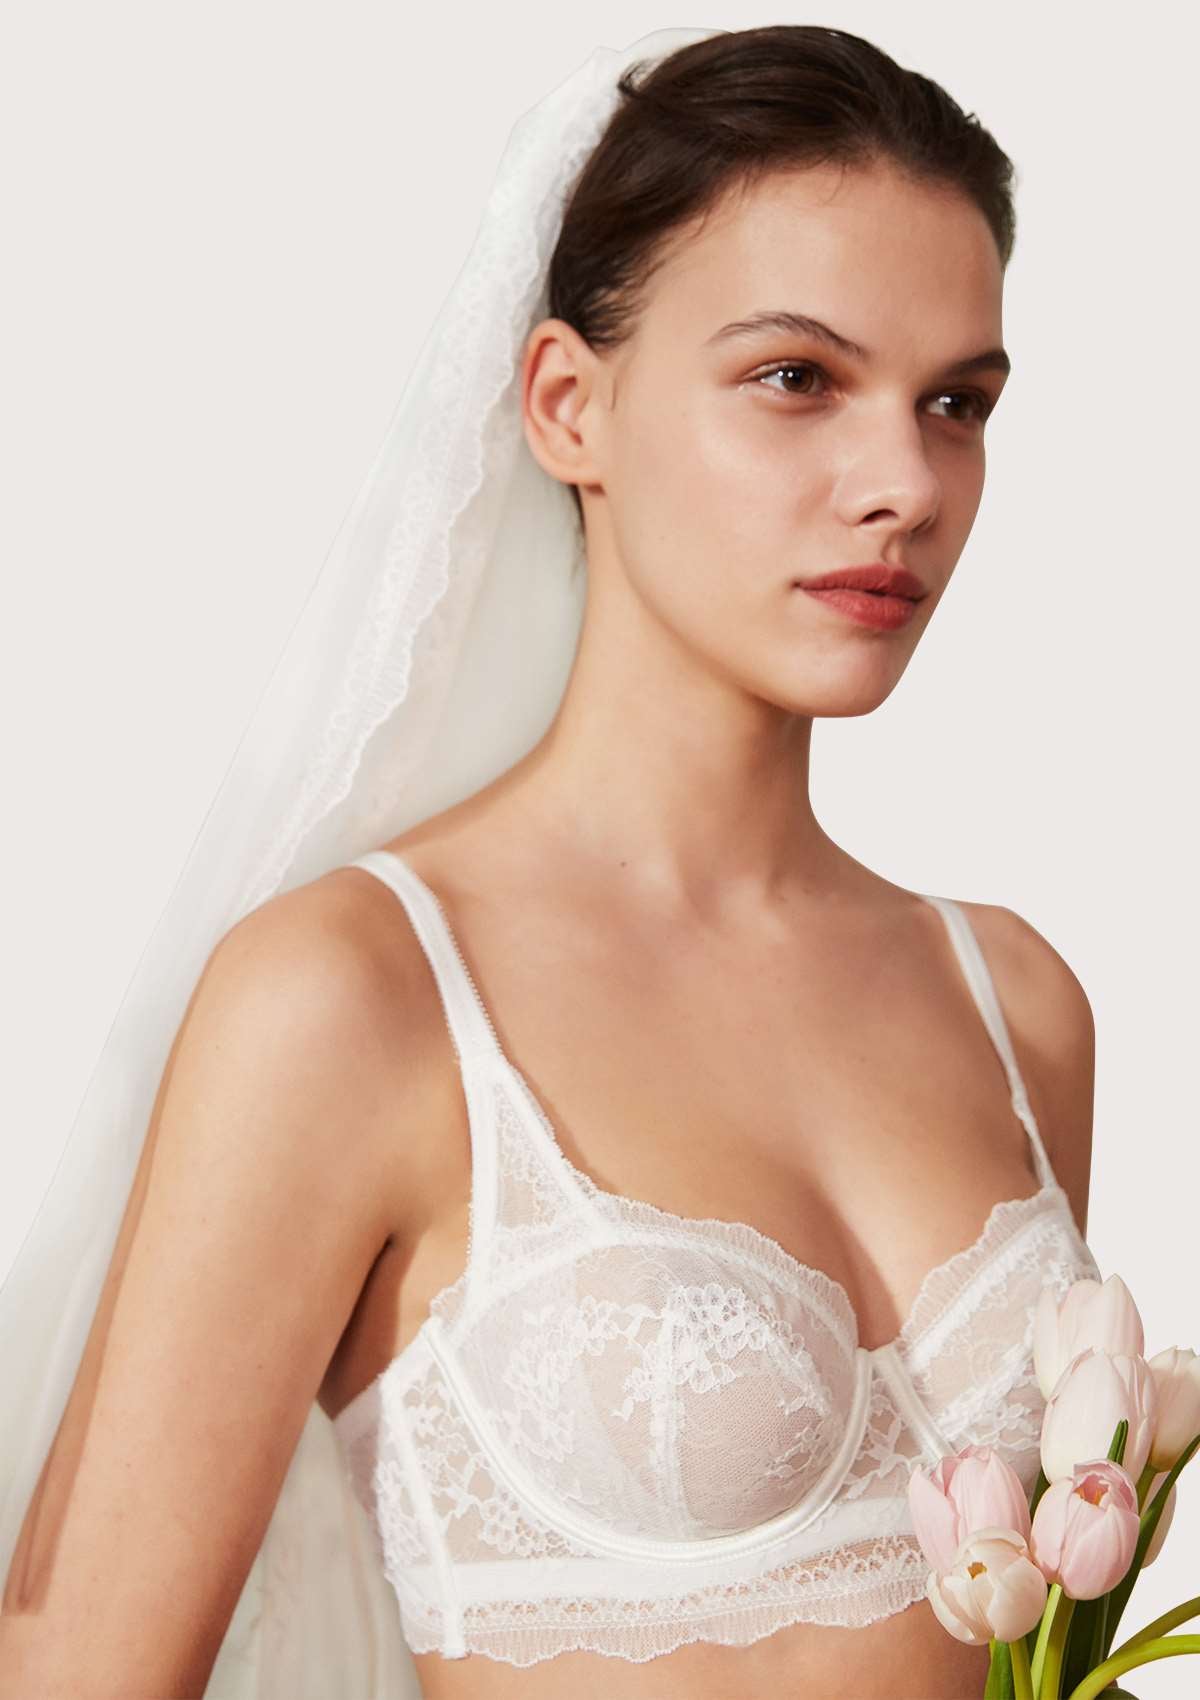 HSIA Floral Lace Unlined Bridal Romantic Balconette Bra Panty Set  - White / 42 / D